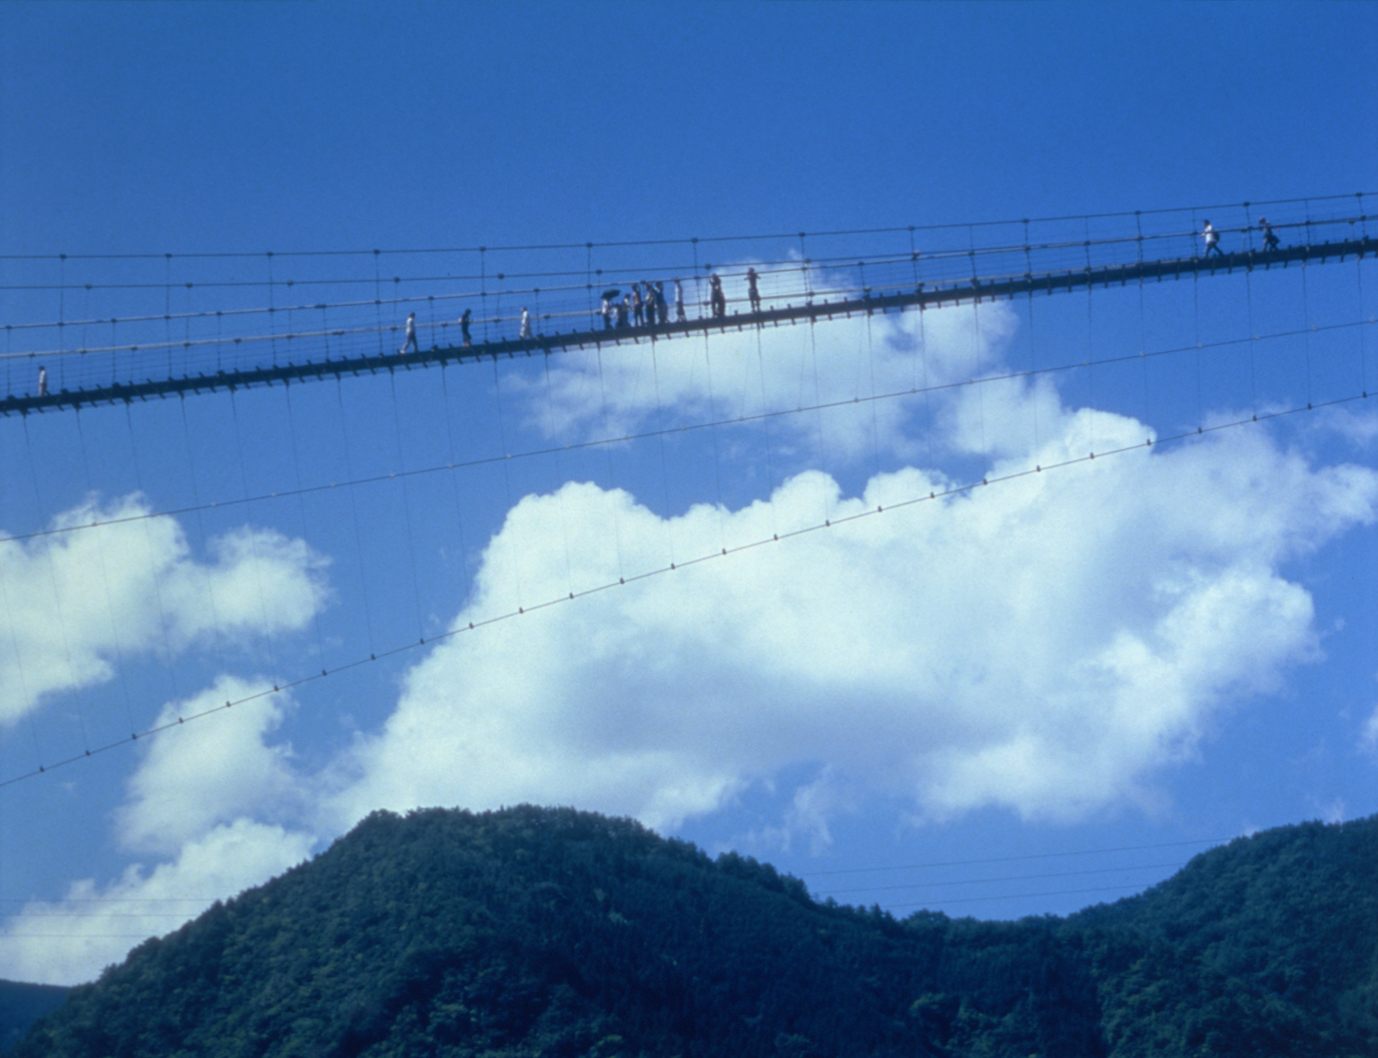 El "puente colgante de Tanize" es uno de los puentes colgantes más largos de la aldea de Totsukawa, que se encuentra junto al distrito de Shinohara.